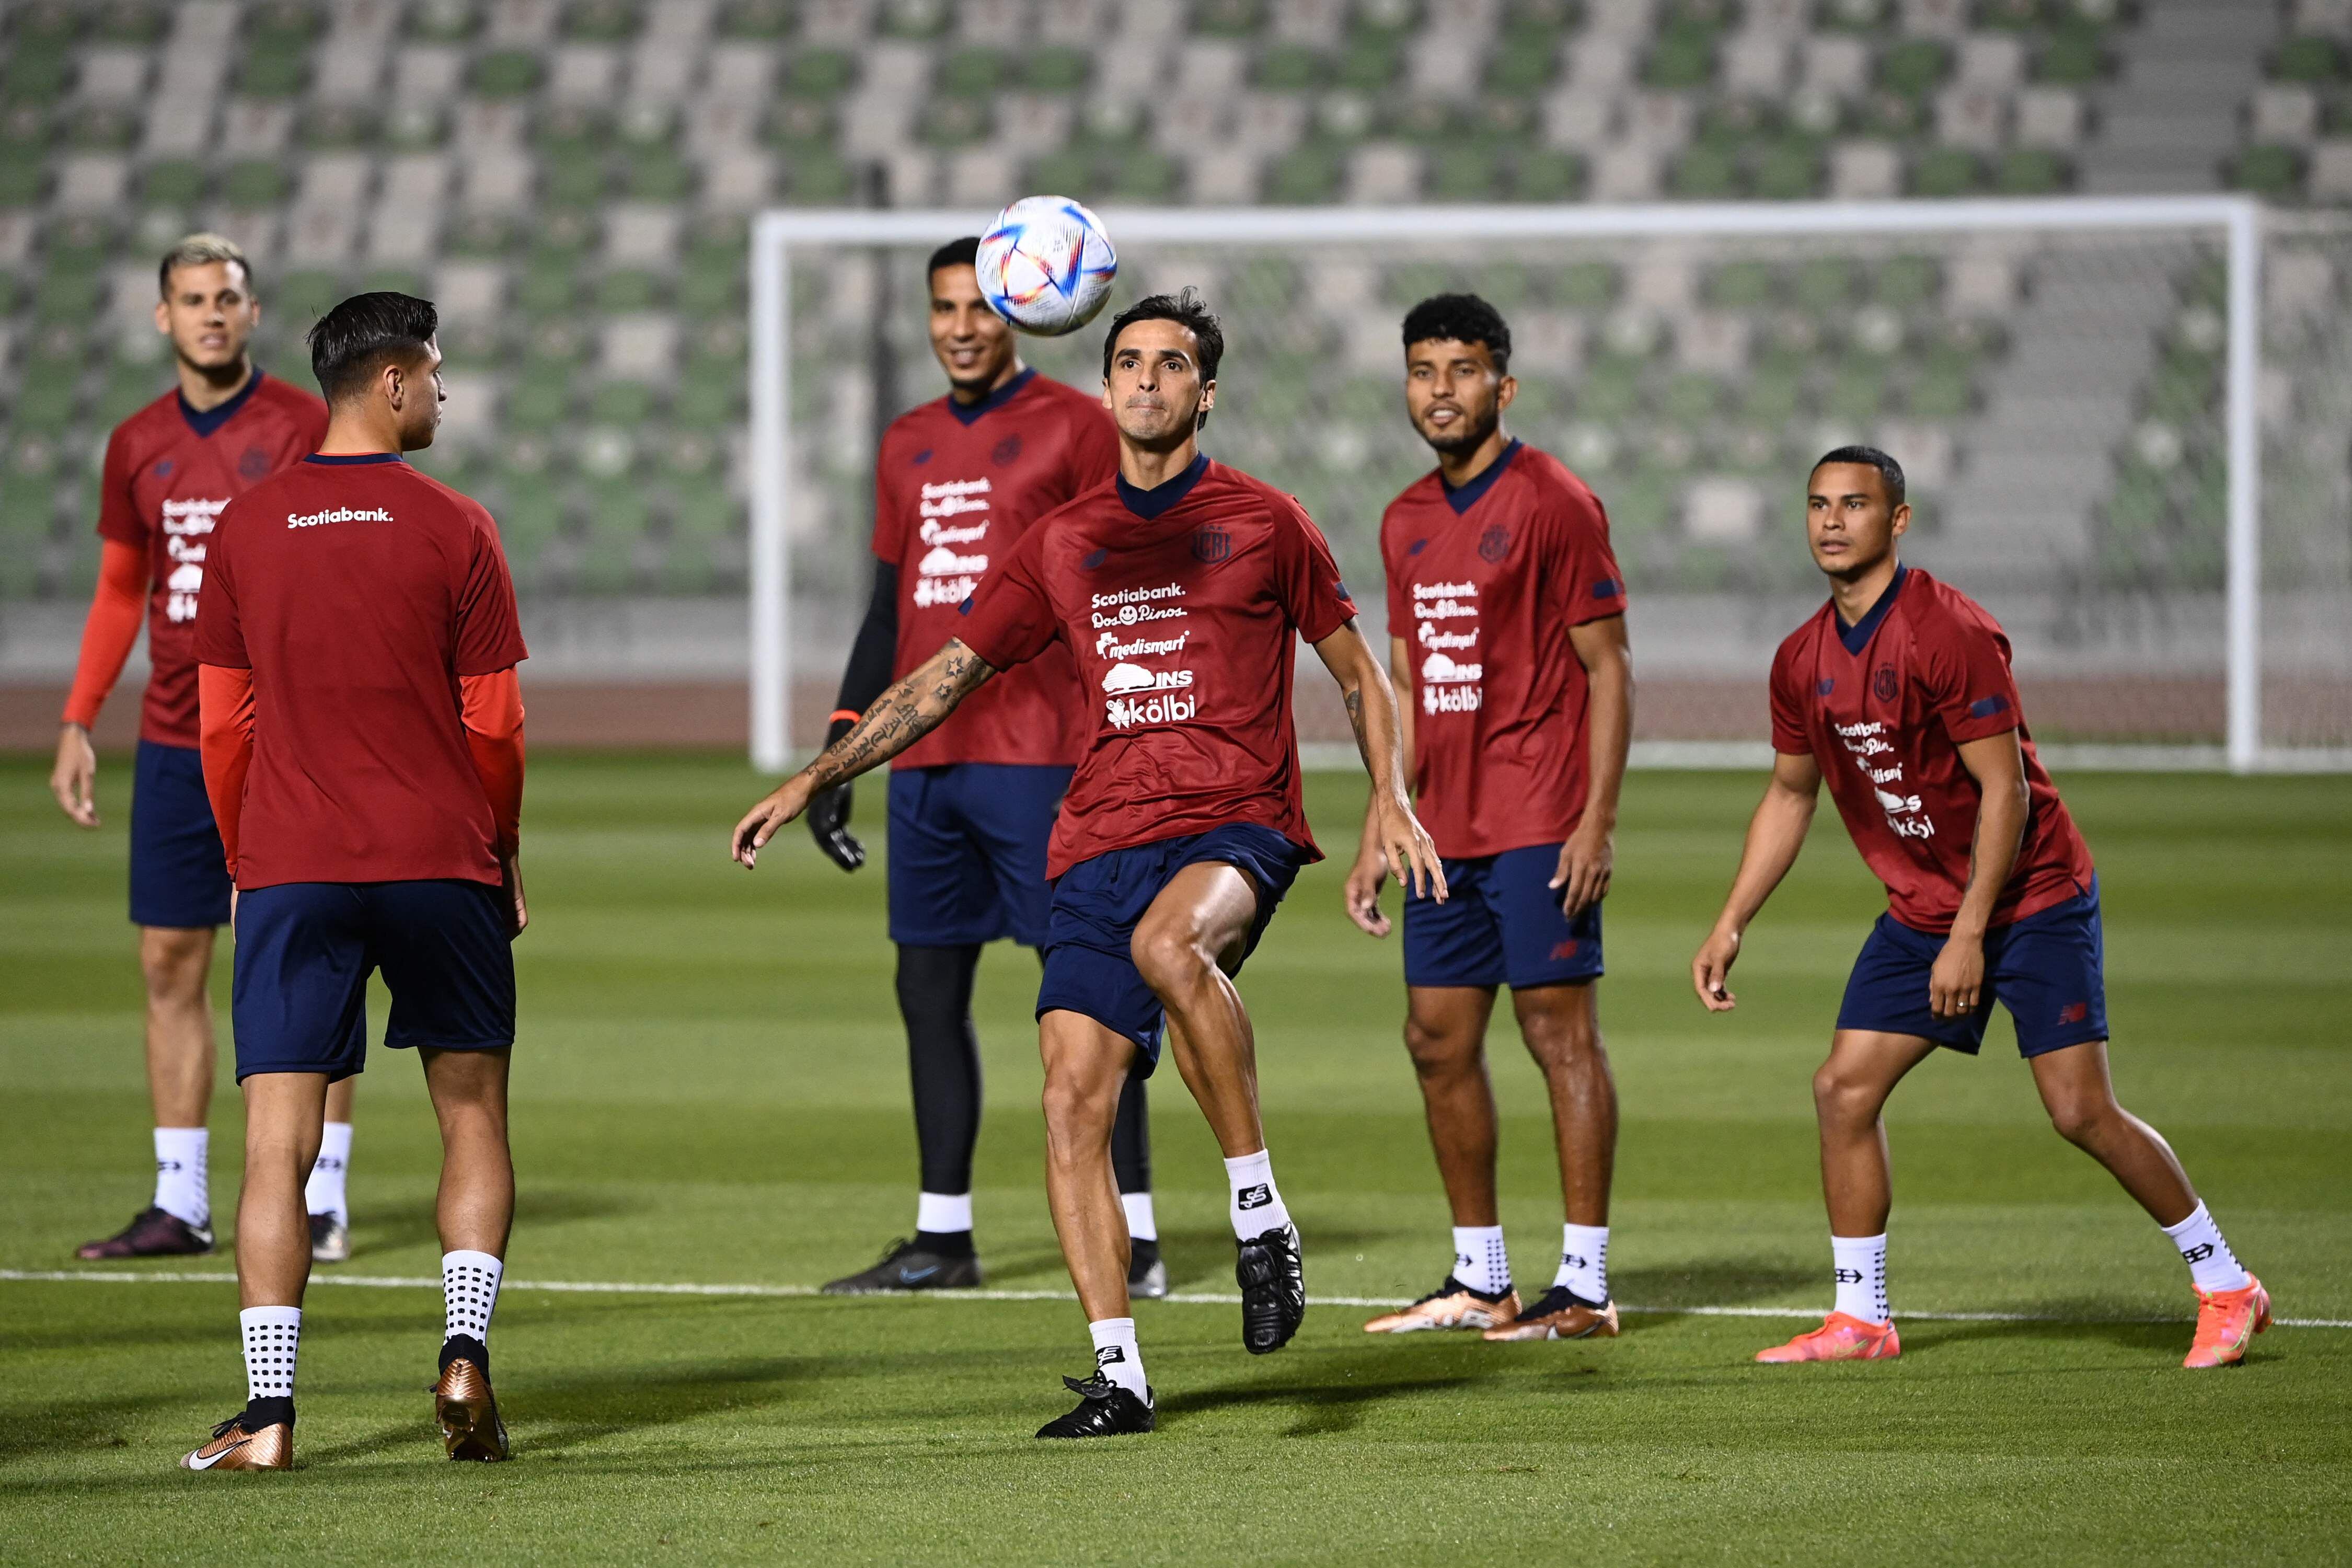 La Selección de Costa Rica acudió este sábado a su campo de entrenamiento en Doha: Al Ahli SC. Ahí, Bryan Ruiz efectúa labores con el balón, mientras sus compañeros observan.